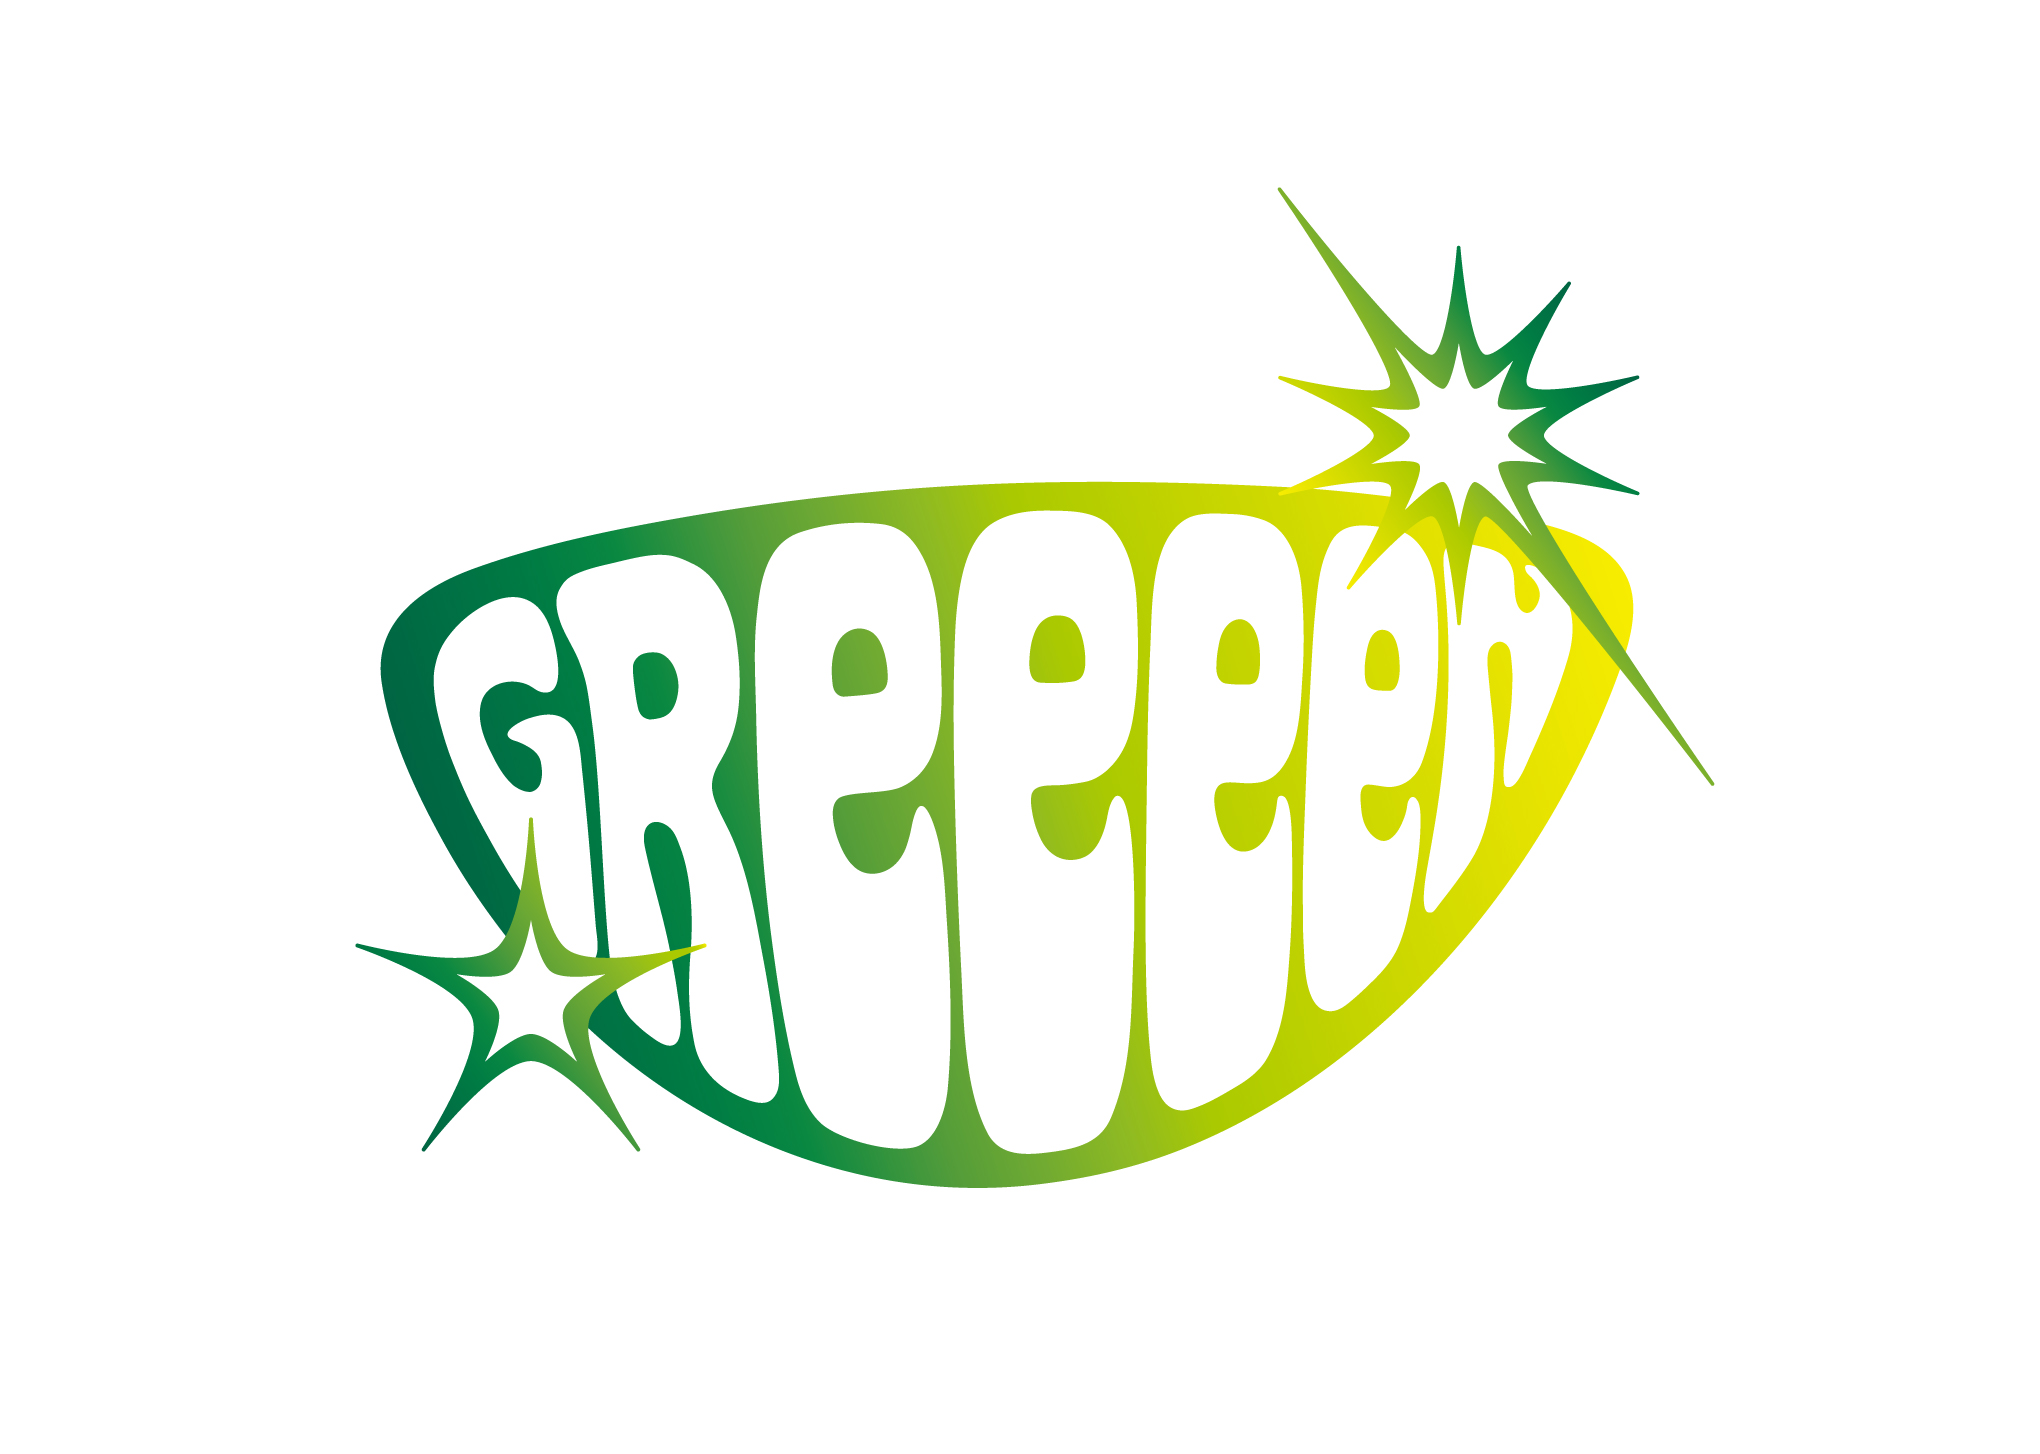 GReeeeN | GritzDesign